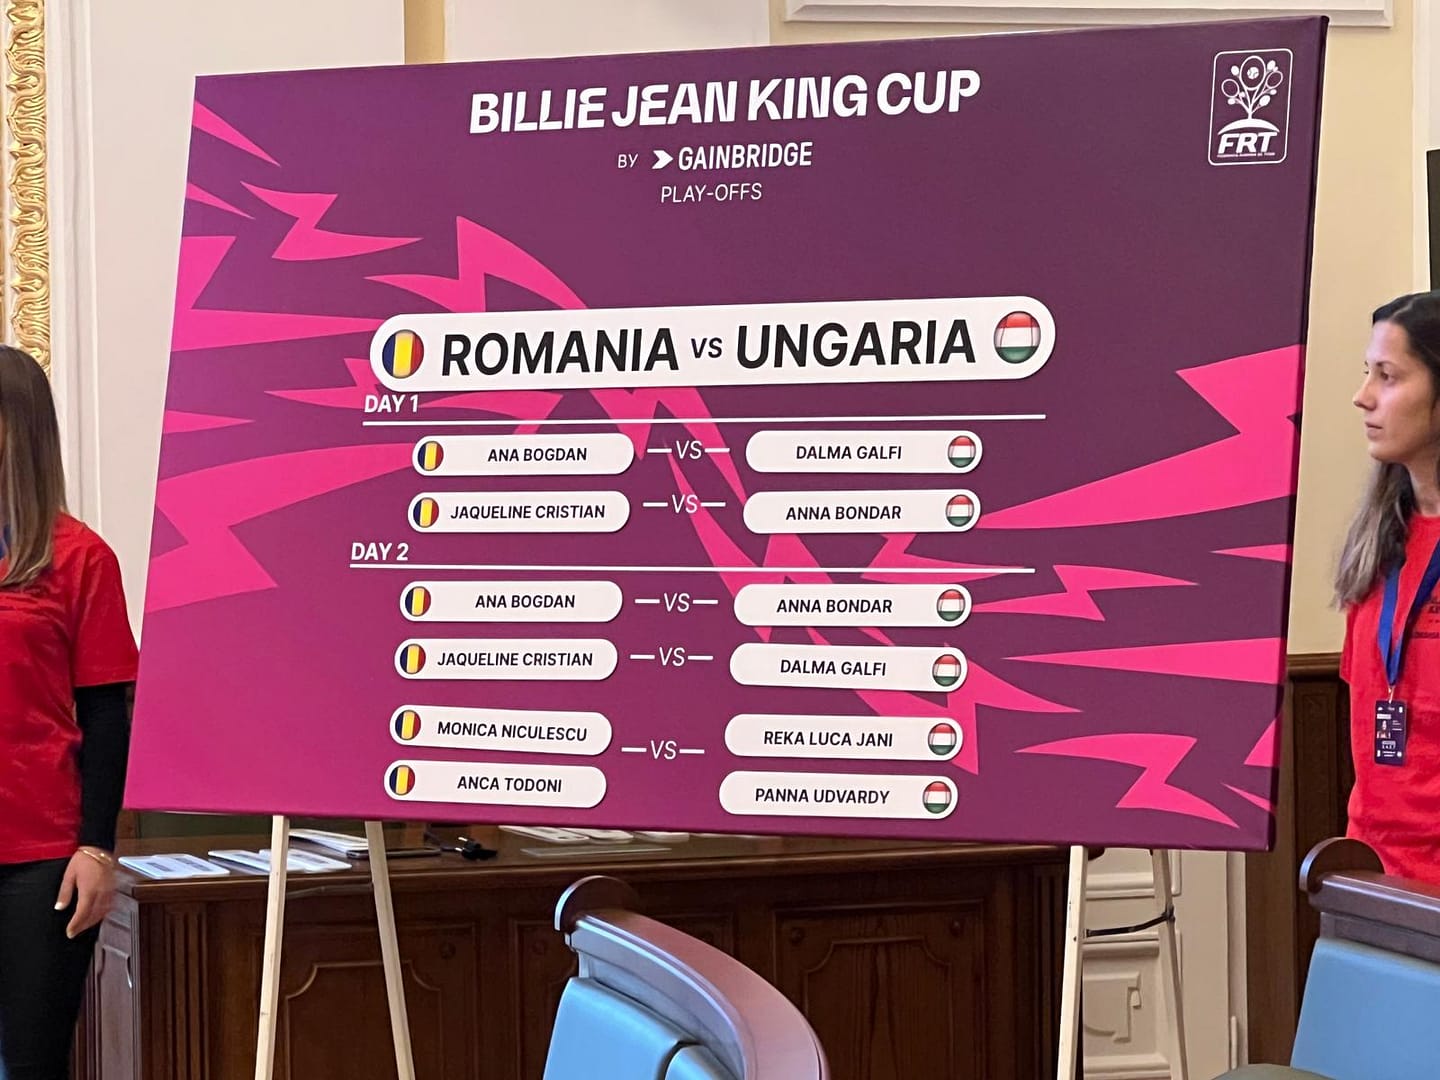 Optimism în echipa Romaniei de Billie Jean King Cup